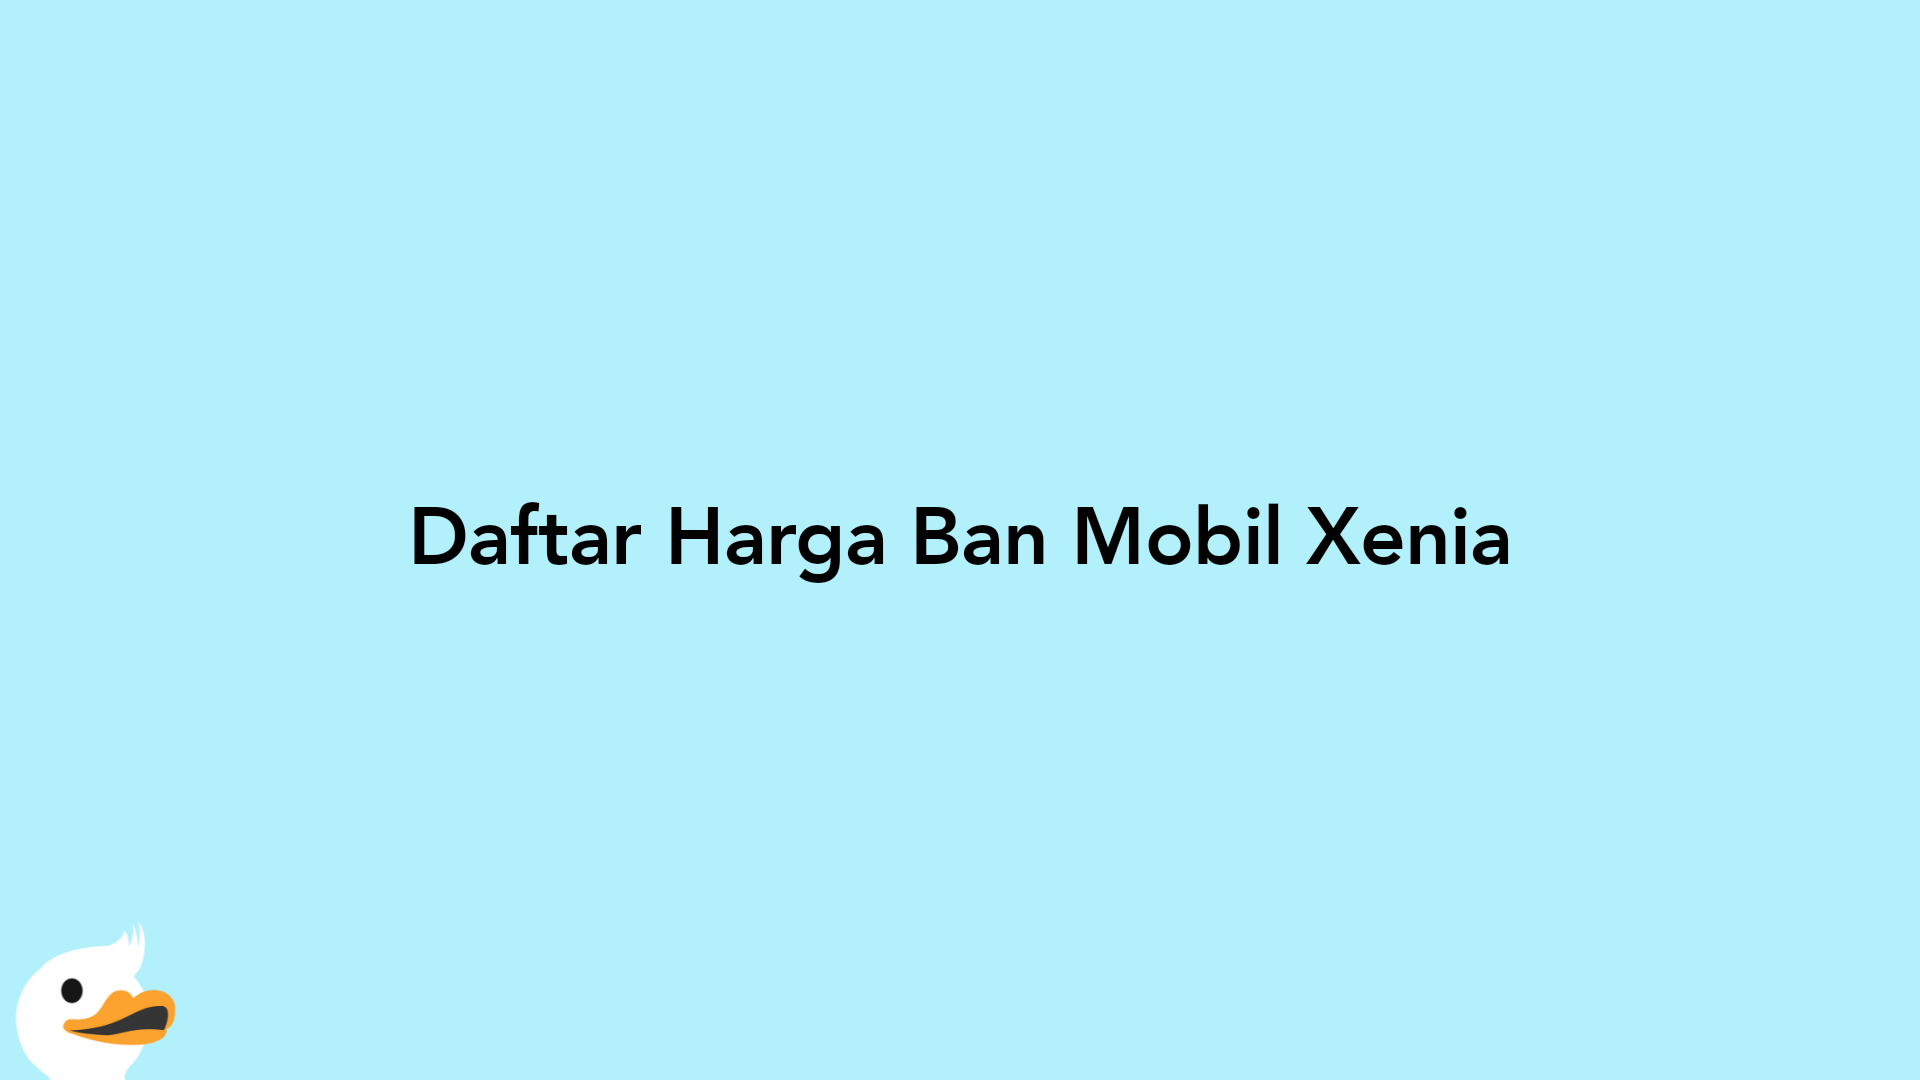 Daftar Harga Ban Mobil Xenia